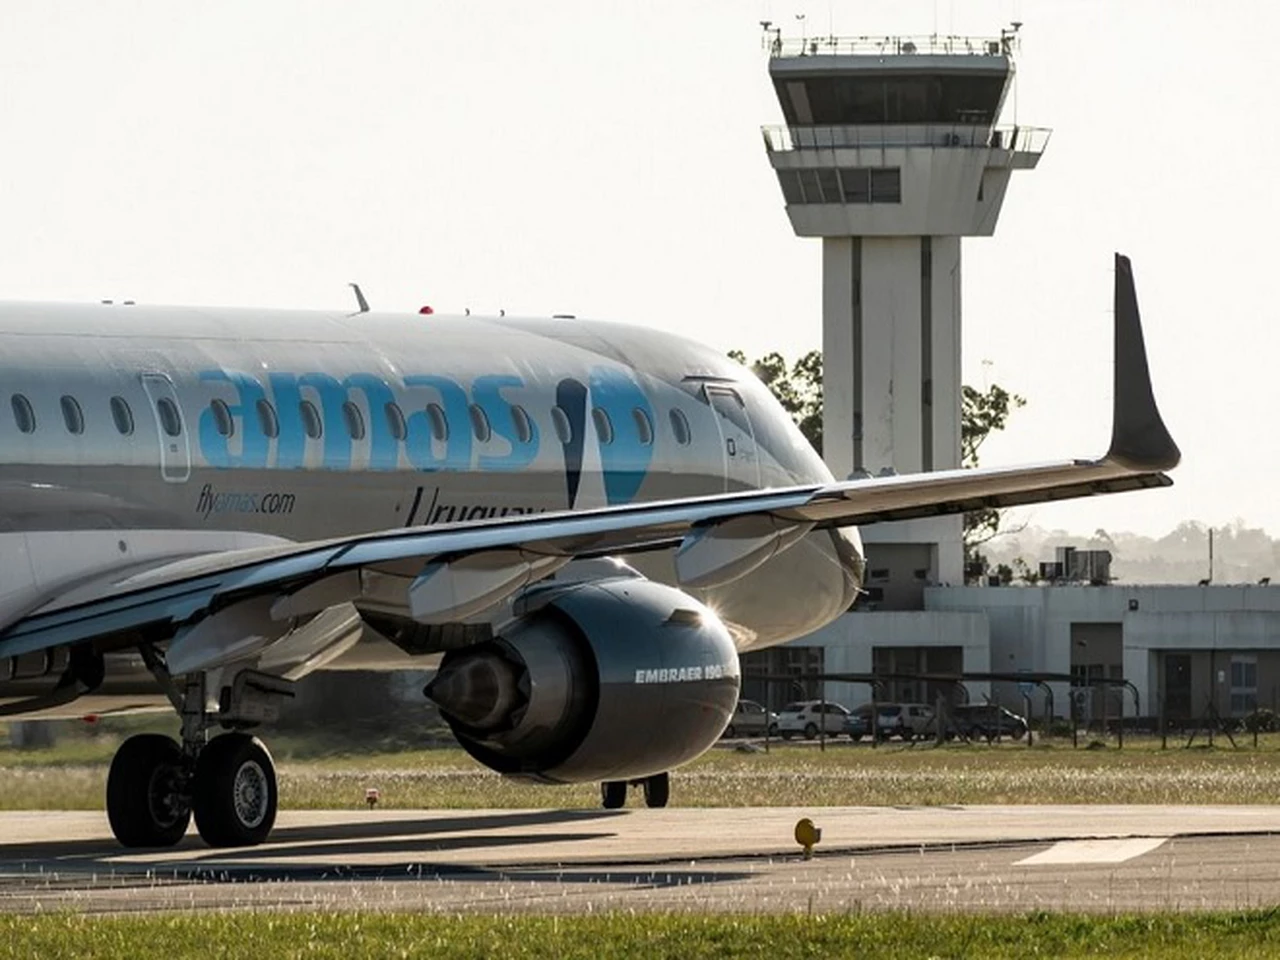 La aerolínea uruguaya Amaszonas anunció el cierre de los vuelos de pasajeros